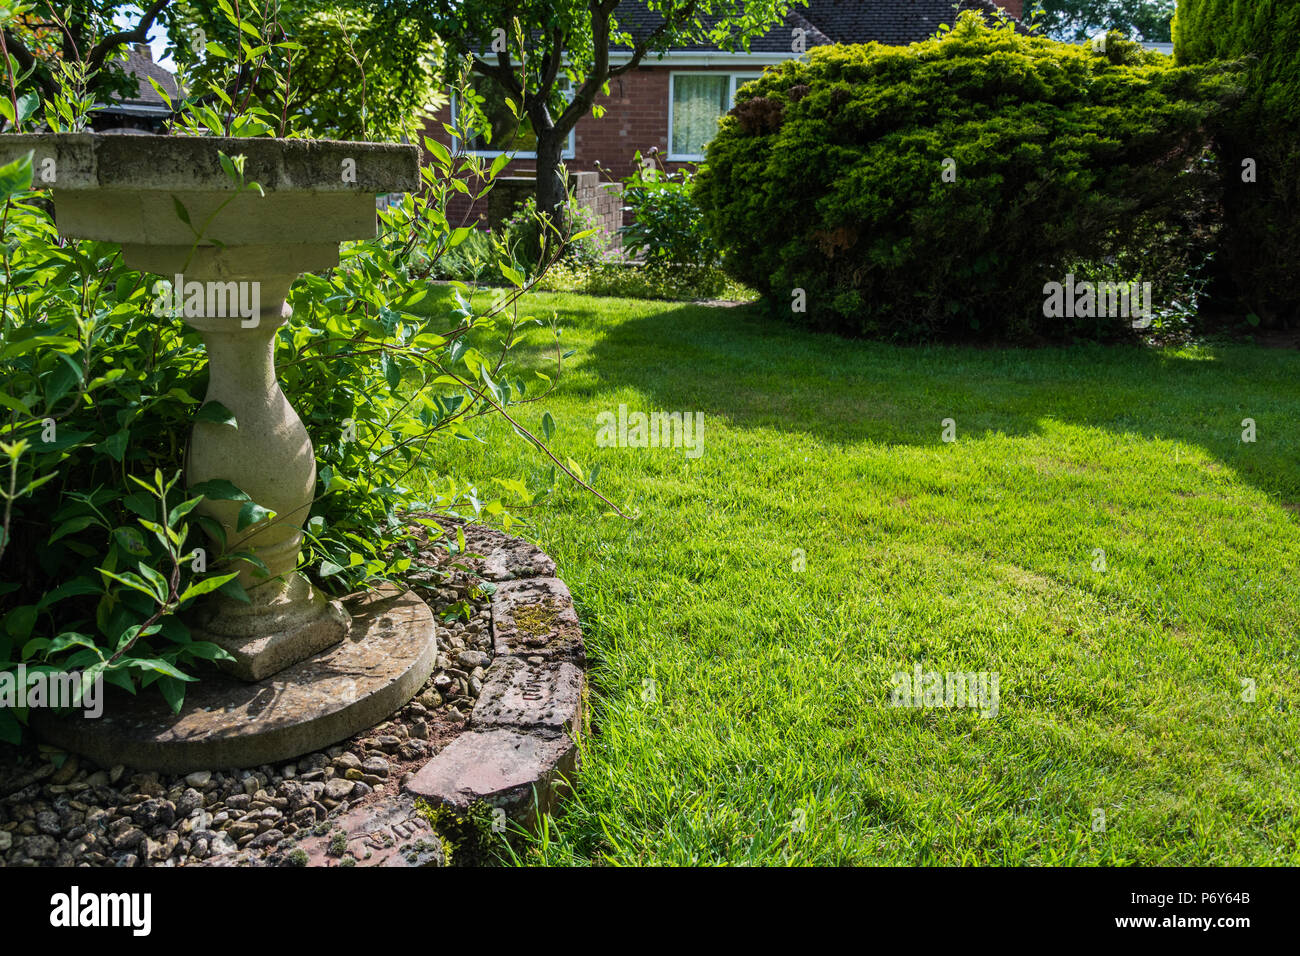 Ein birdbath in einem schönen Englischen Garten an einem warmen, sonnigen Tag. Stockfoto